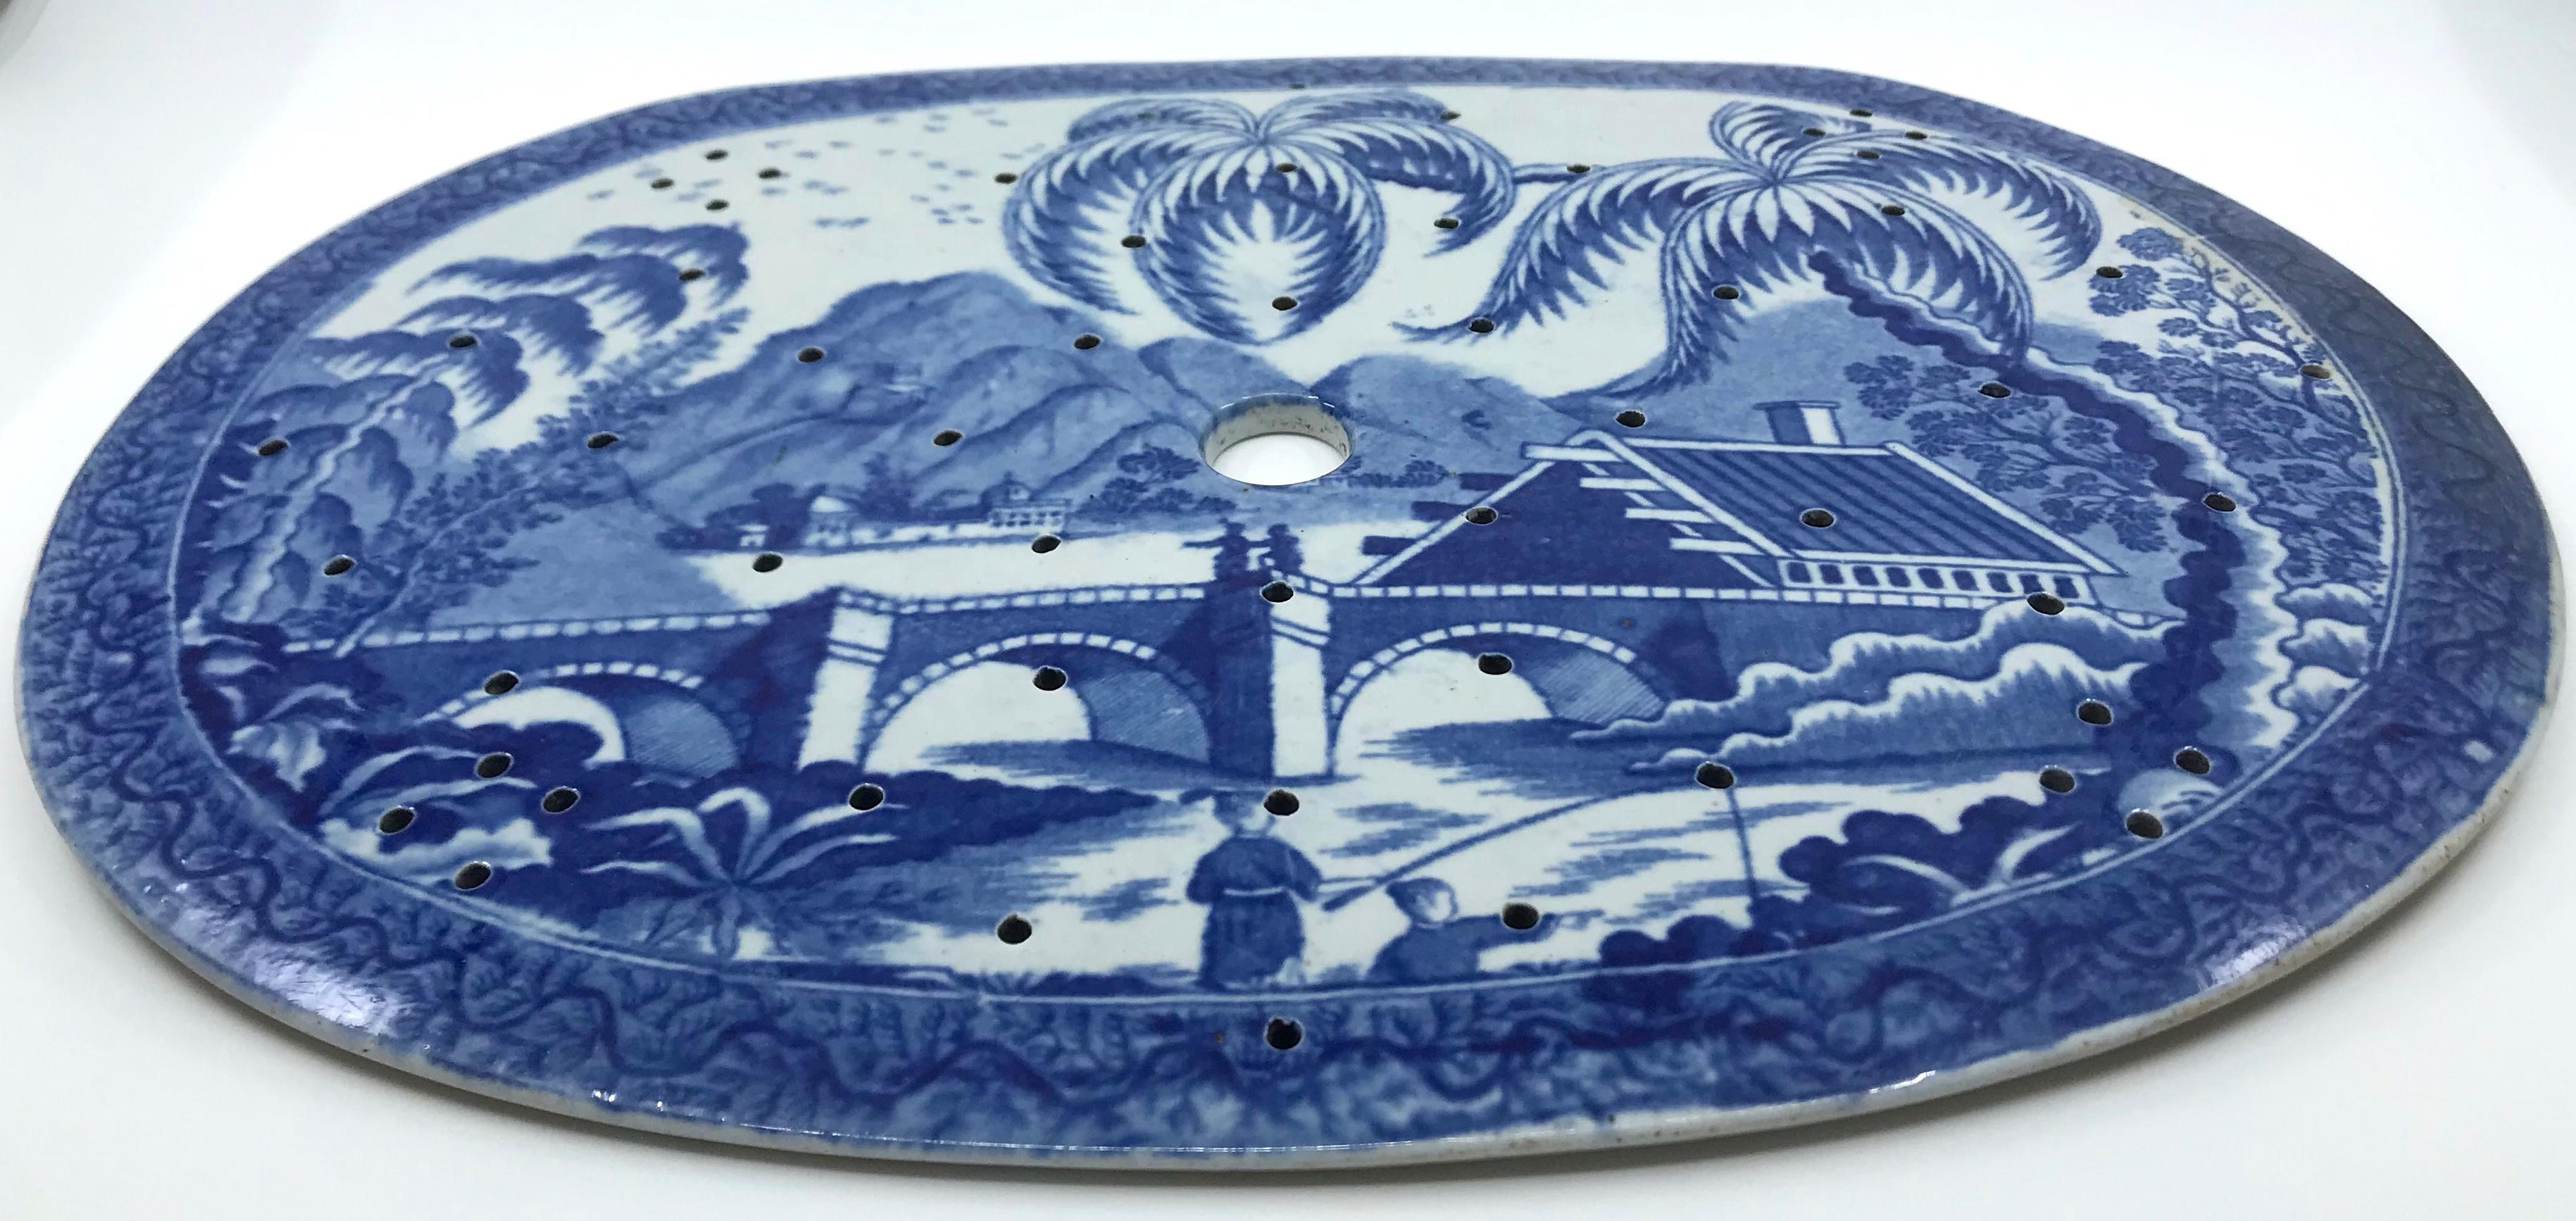 Grande passoire de chinoiserie bleue et blanche. Substantiel et rare tamis Worcester précoce avec une forte scène de chinoiserie bleue et blanche avec des personnages sur un pont couvert avec de grands palmiers et des montagnes au loin, le tout